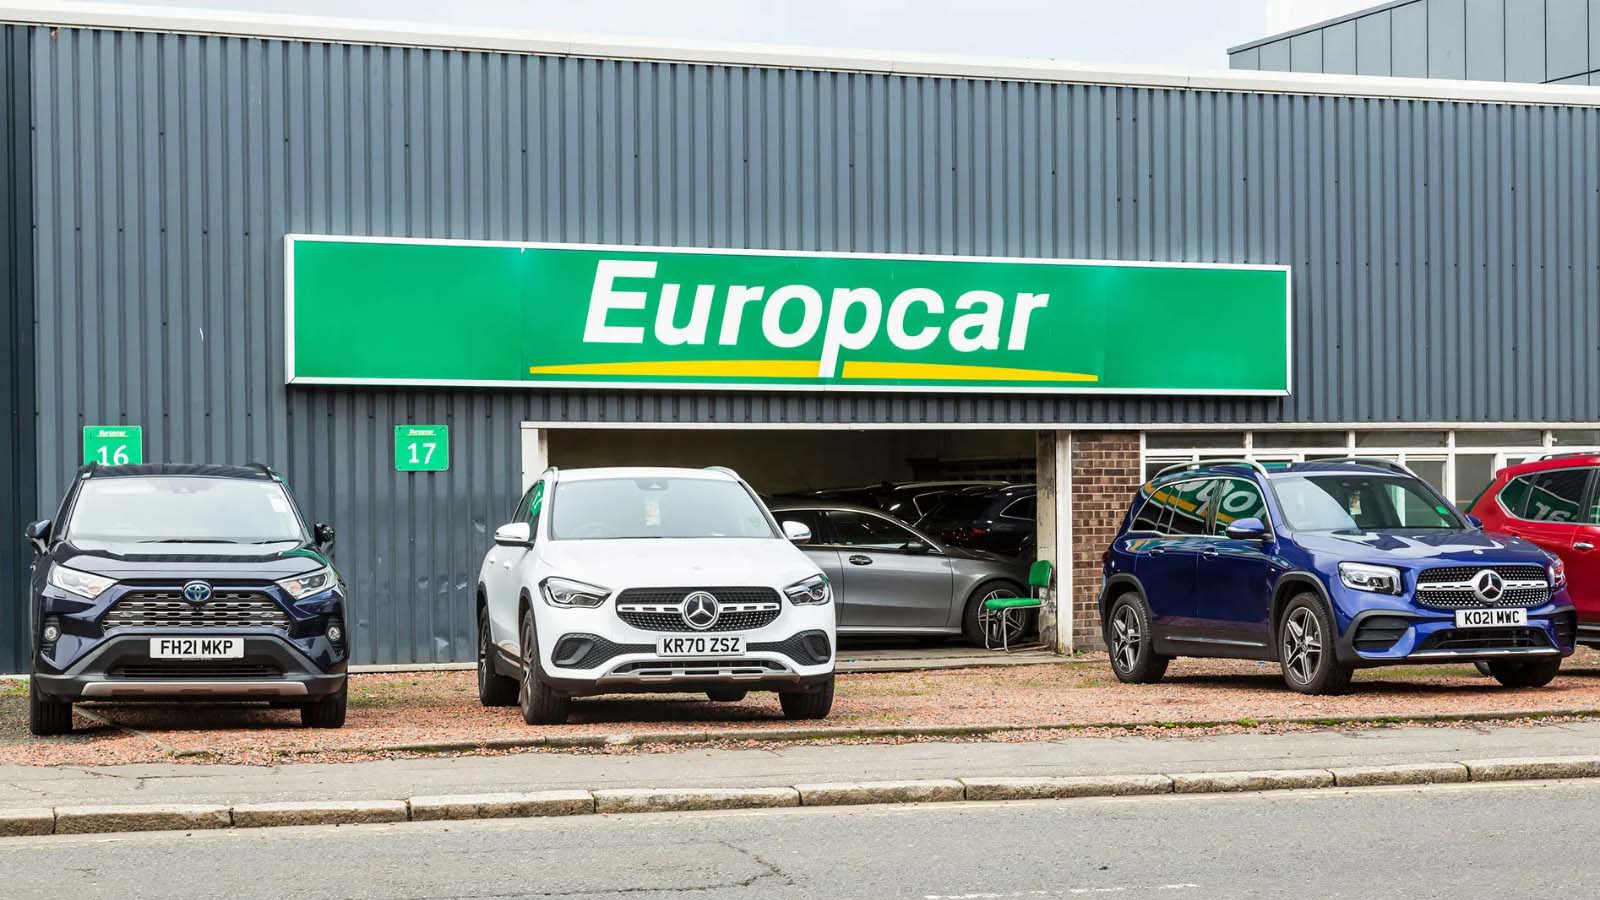 Le accuse - probabilmente infondate - di un utente riguardo al furto di dati che ha colpito Europcar